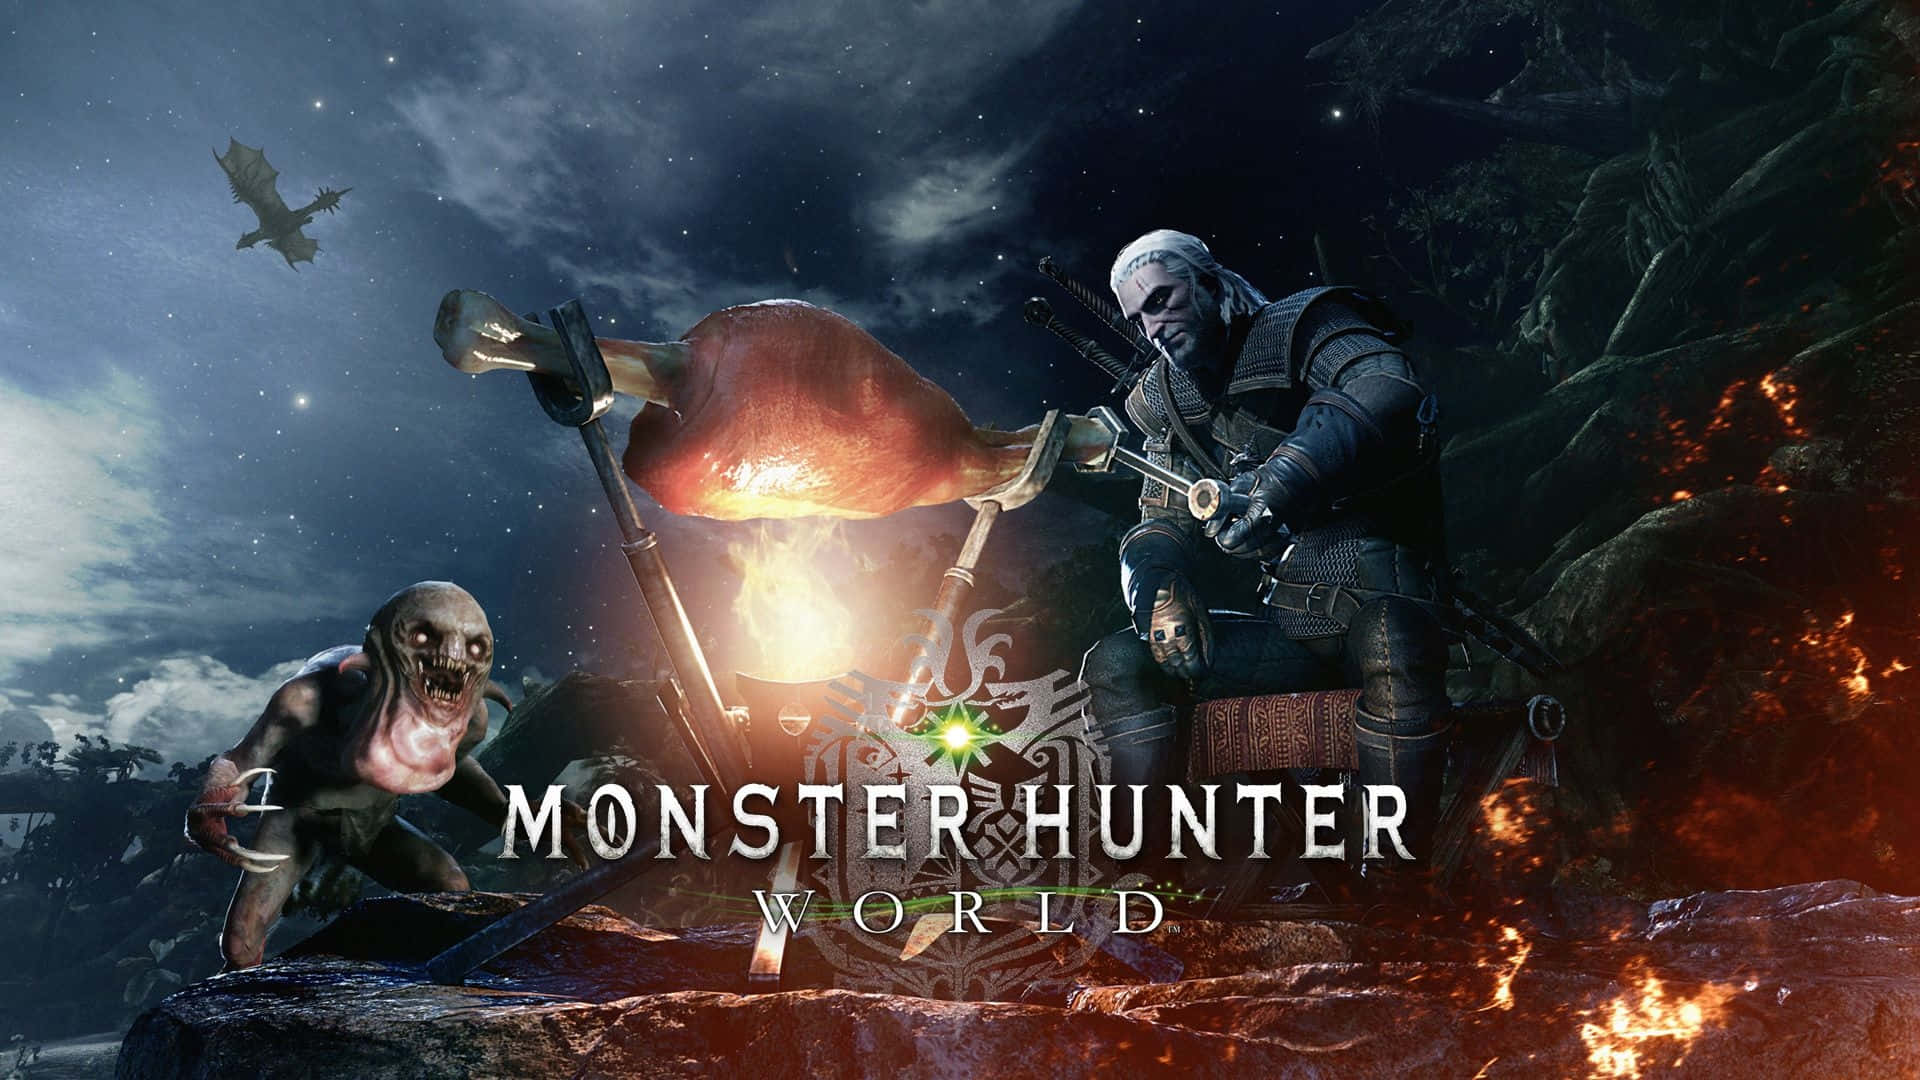 Descubreun Nuevo Mundo Valiente Con Monster Hunter World.